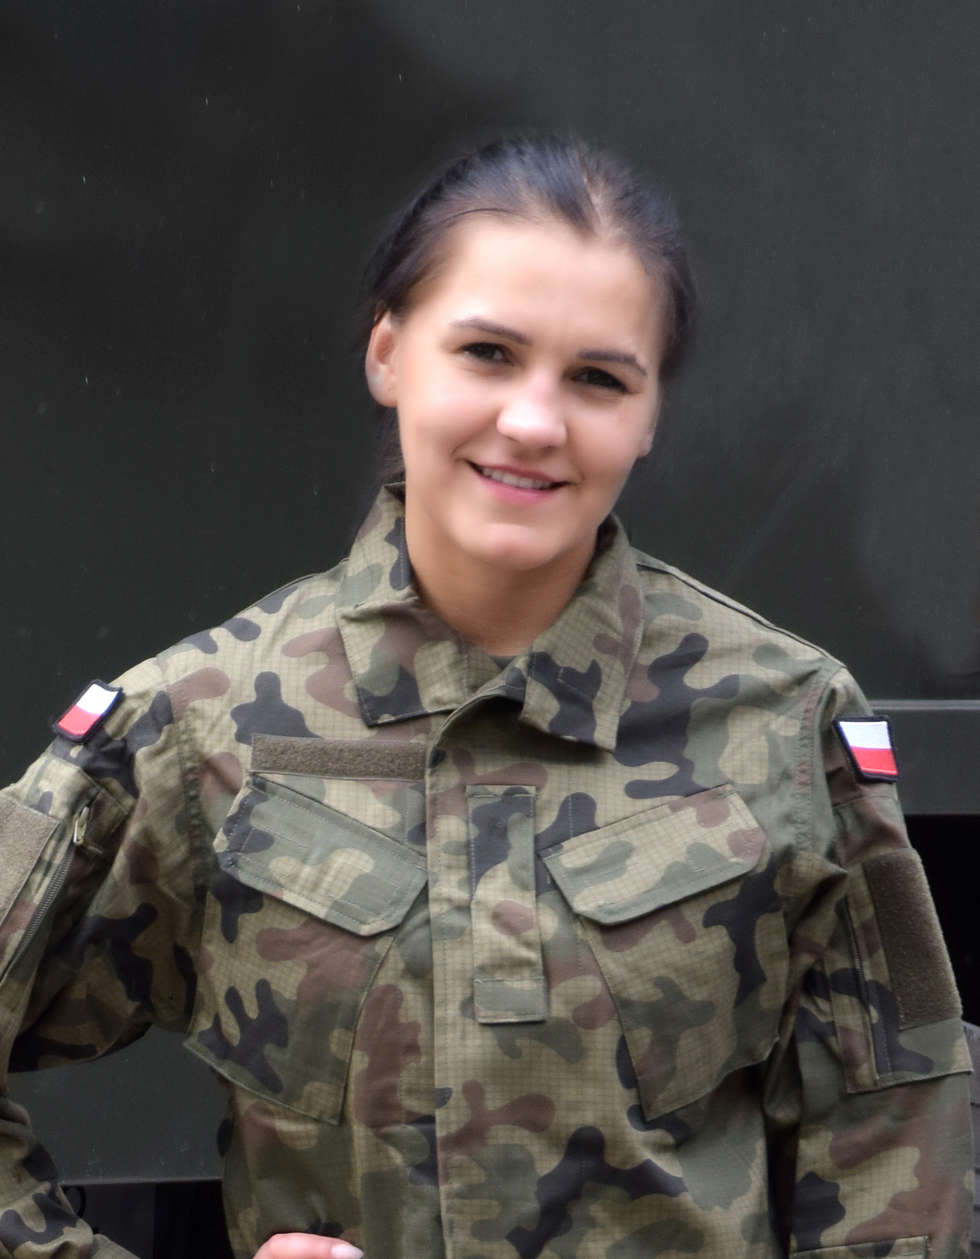  <p>szer. Karolina Borysiuk&nbsp;&ndash; 23 latka pochodząca z Międzyrzeca Podlaskiego</p>
<p>Zapytana o motywację wstąpienia do WOT odpowiada: &bdquo;Terytorialna Służba Wojskowa jest dla mnie okazją do kontynuowania mojej przygody z wojskiem, kt&oacute;ra jest dla mnie niezwykle interesująca. Bardzo lubię aktywność fizyczną, dużo biegam oraz uczestniczę w zajęciach fitness. Jeśli robiąc to co lubię mogę jednocześnie stać się użyteczna dla swojego kraju, to dlaczego miałabym tego nie zrobić? &rdquo;</p>
<p>Stopień szeregowego zdobyła w 2017 r. po ukończeniu 4 miesięcznej służby przygotowawczej w CSiL w Dęblinie. Jest absolwentką Uniwersytetu Przyrodniczo &ndash; Humanistycznego w Siedlcach na kt&oacute;rym ukończyła kierunek Bezpieczeństwo Narodowe. Pracuje jako doradca klienta w prywatnej firmie z siedzibą w swoim mieście.</p>